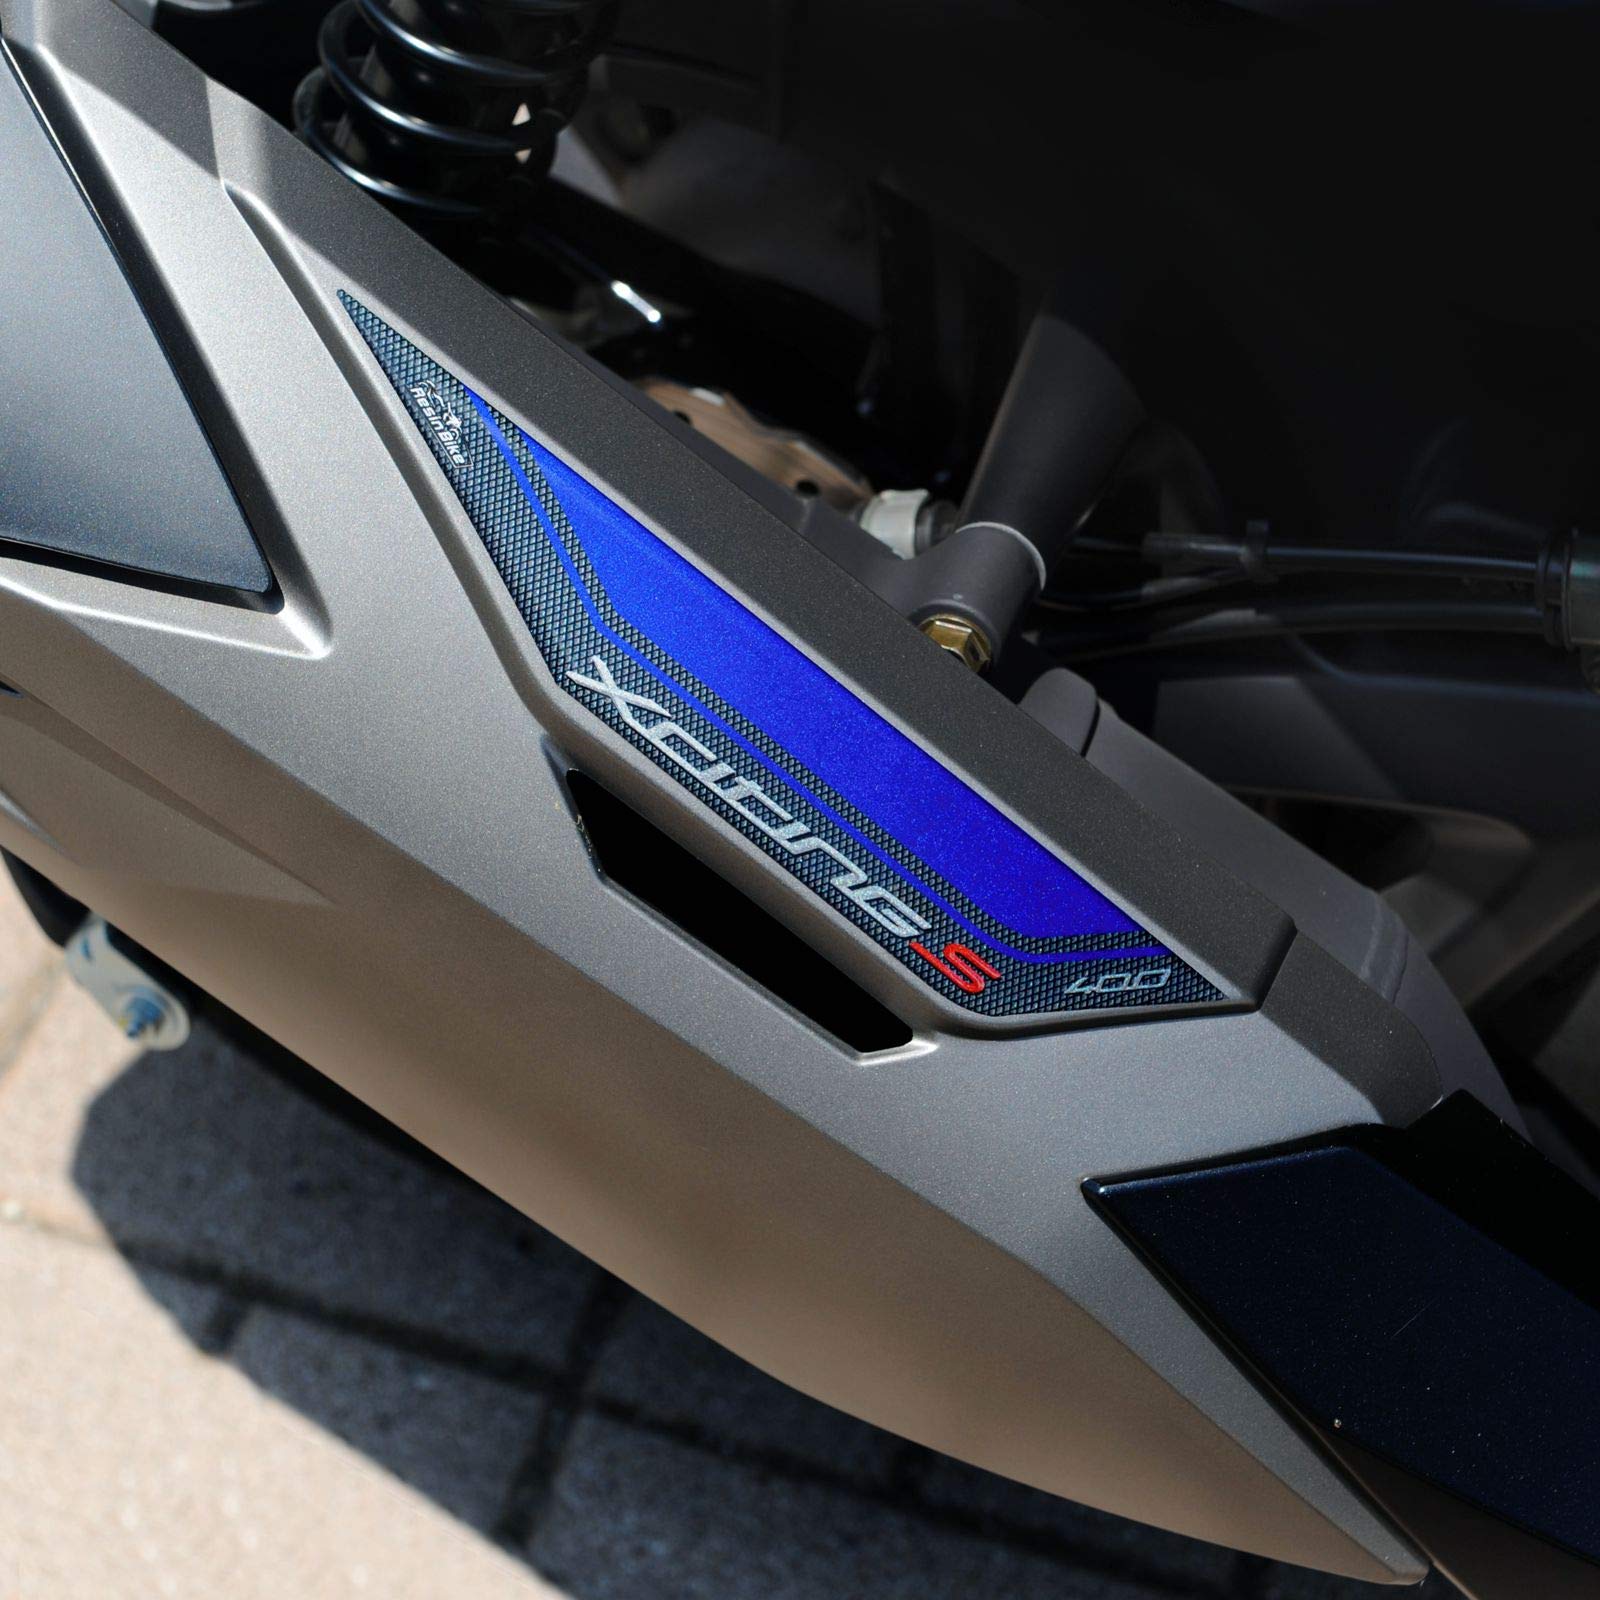 Resin Bike Aufkleber für Motorrad Kompatibel mit Kymco Xciting 400s 2019. Marmittenschutz vor Stößen und Kratzern. 3D-Harzklebstoff. Motorrad-Gadget - Stickers - Made in Italy von Resin Bike